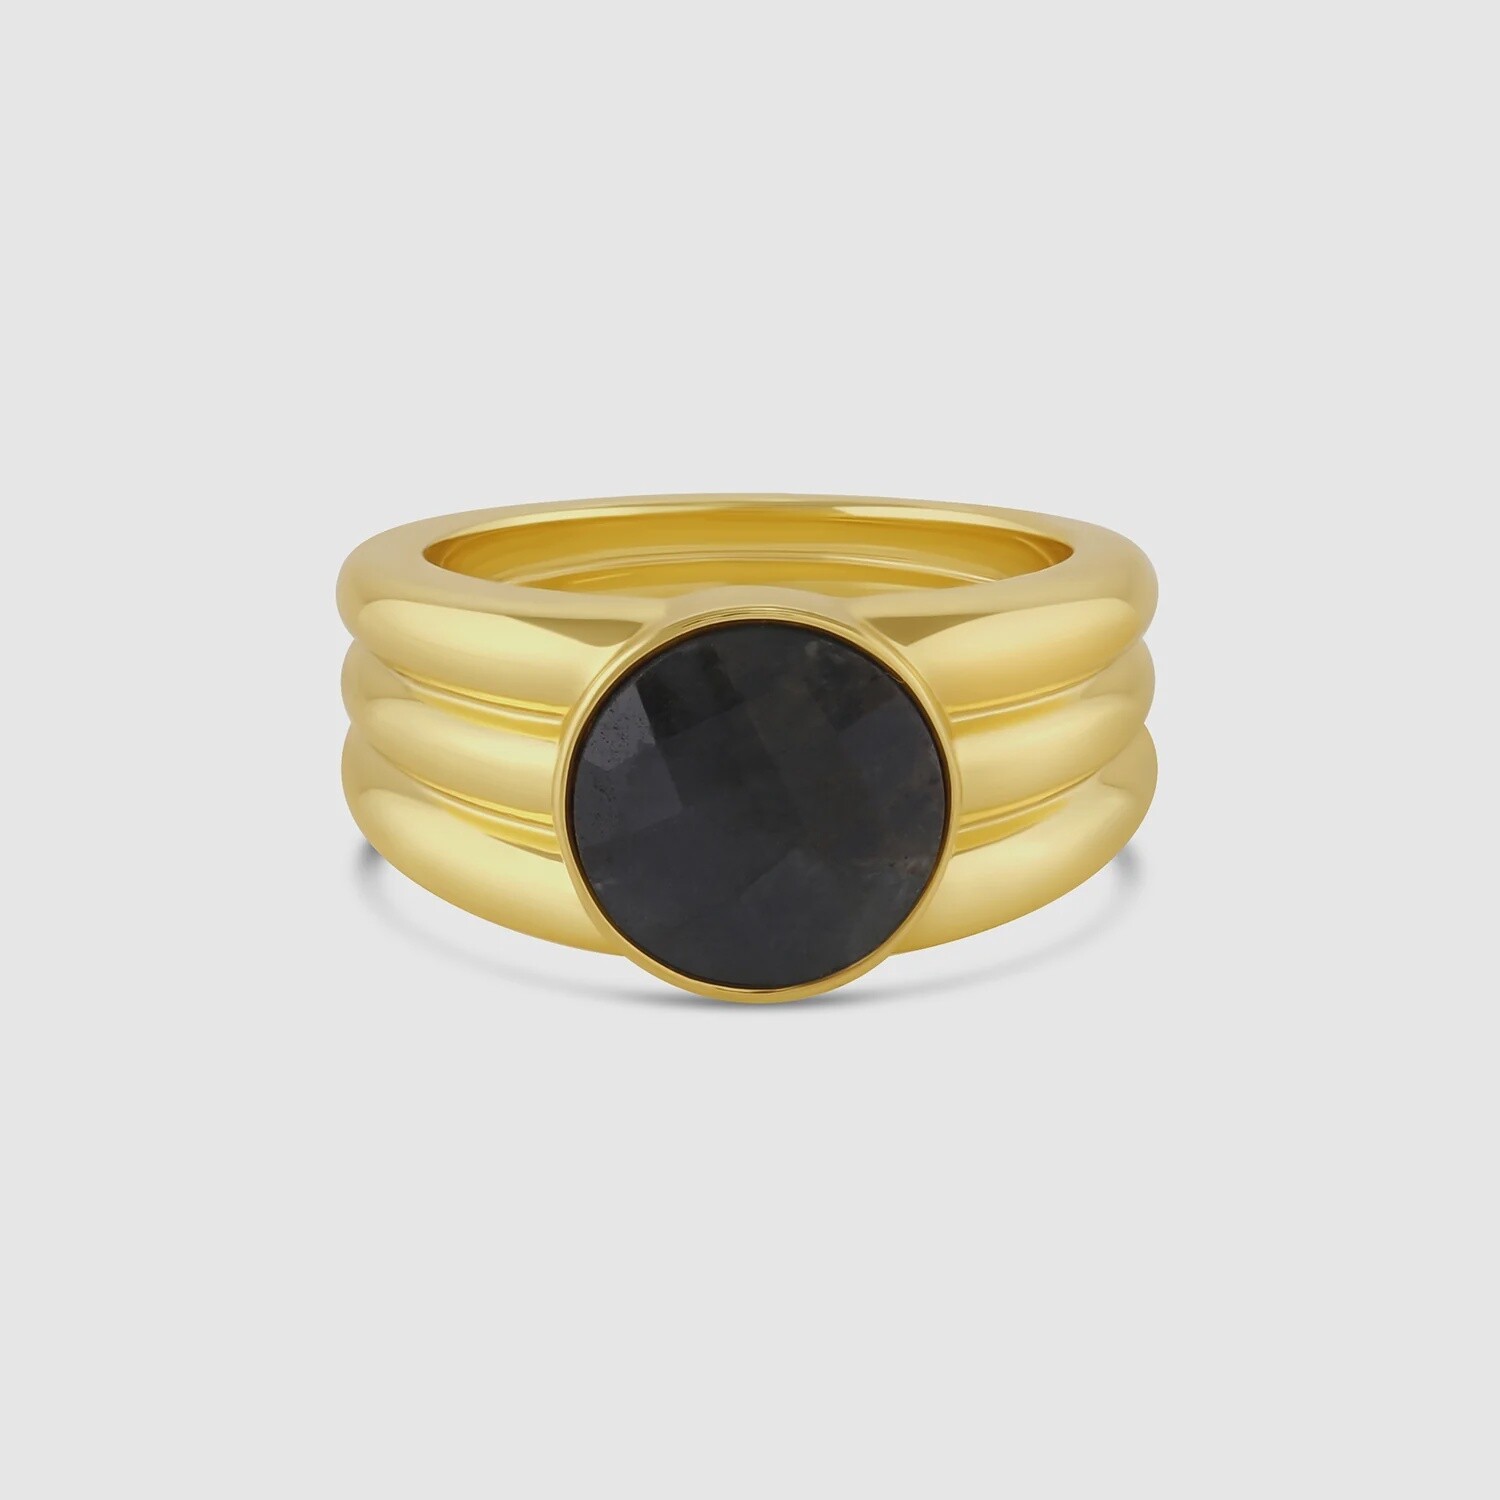 Power Gemstone Ring for Balance - Gold / Labradorite / 7